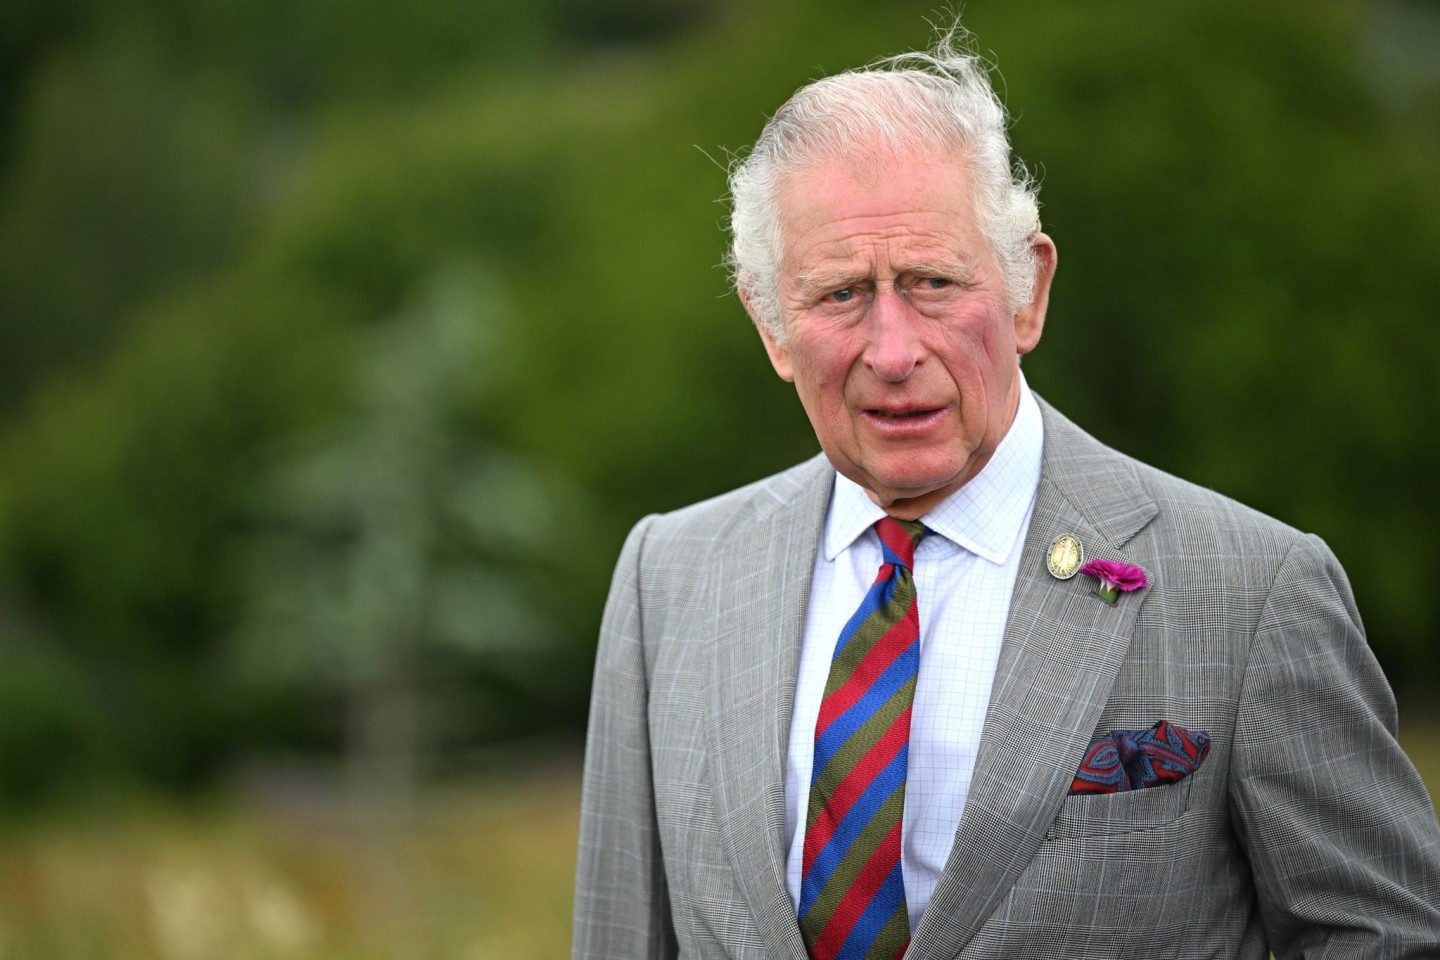 Für seine Wohltätigkeitsorganisation hat der britische Thronfolger Prinz Charles eine Millionenspende von Halbbrüdern des Terroristen Osama bin Laden angenommen.